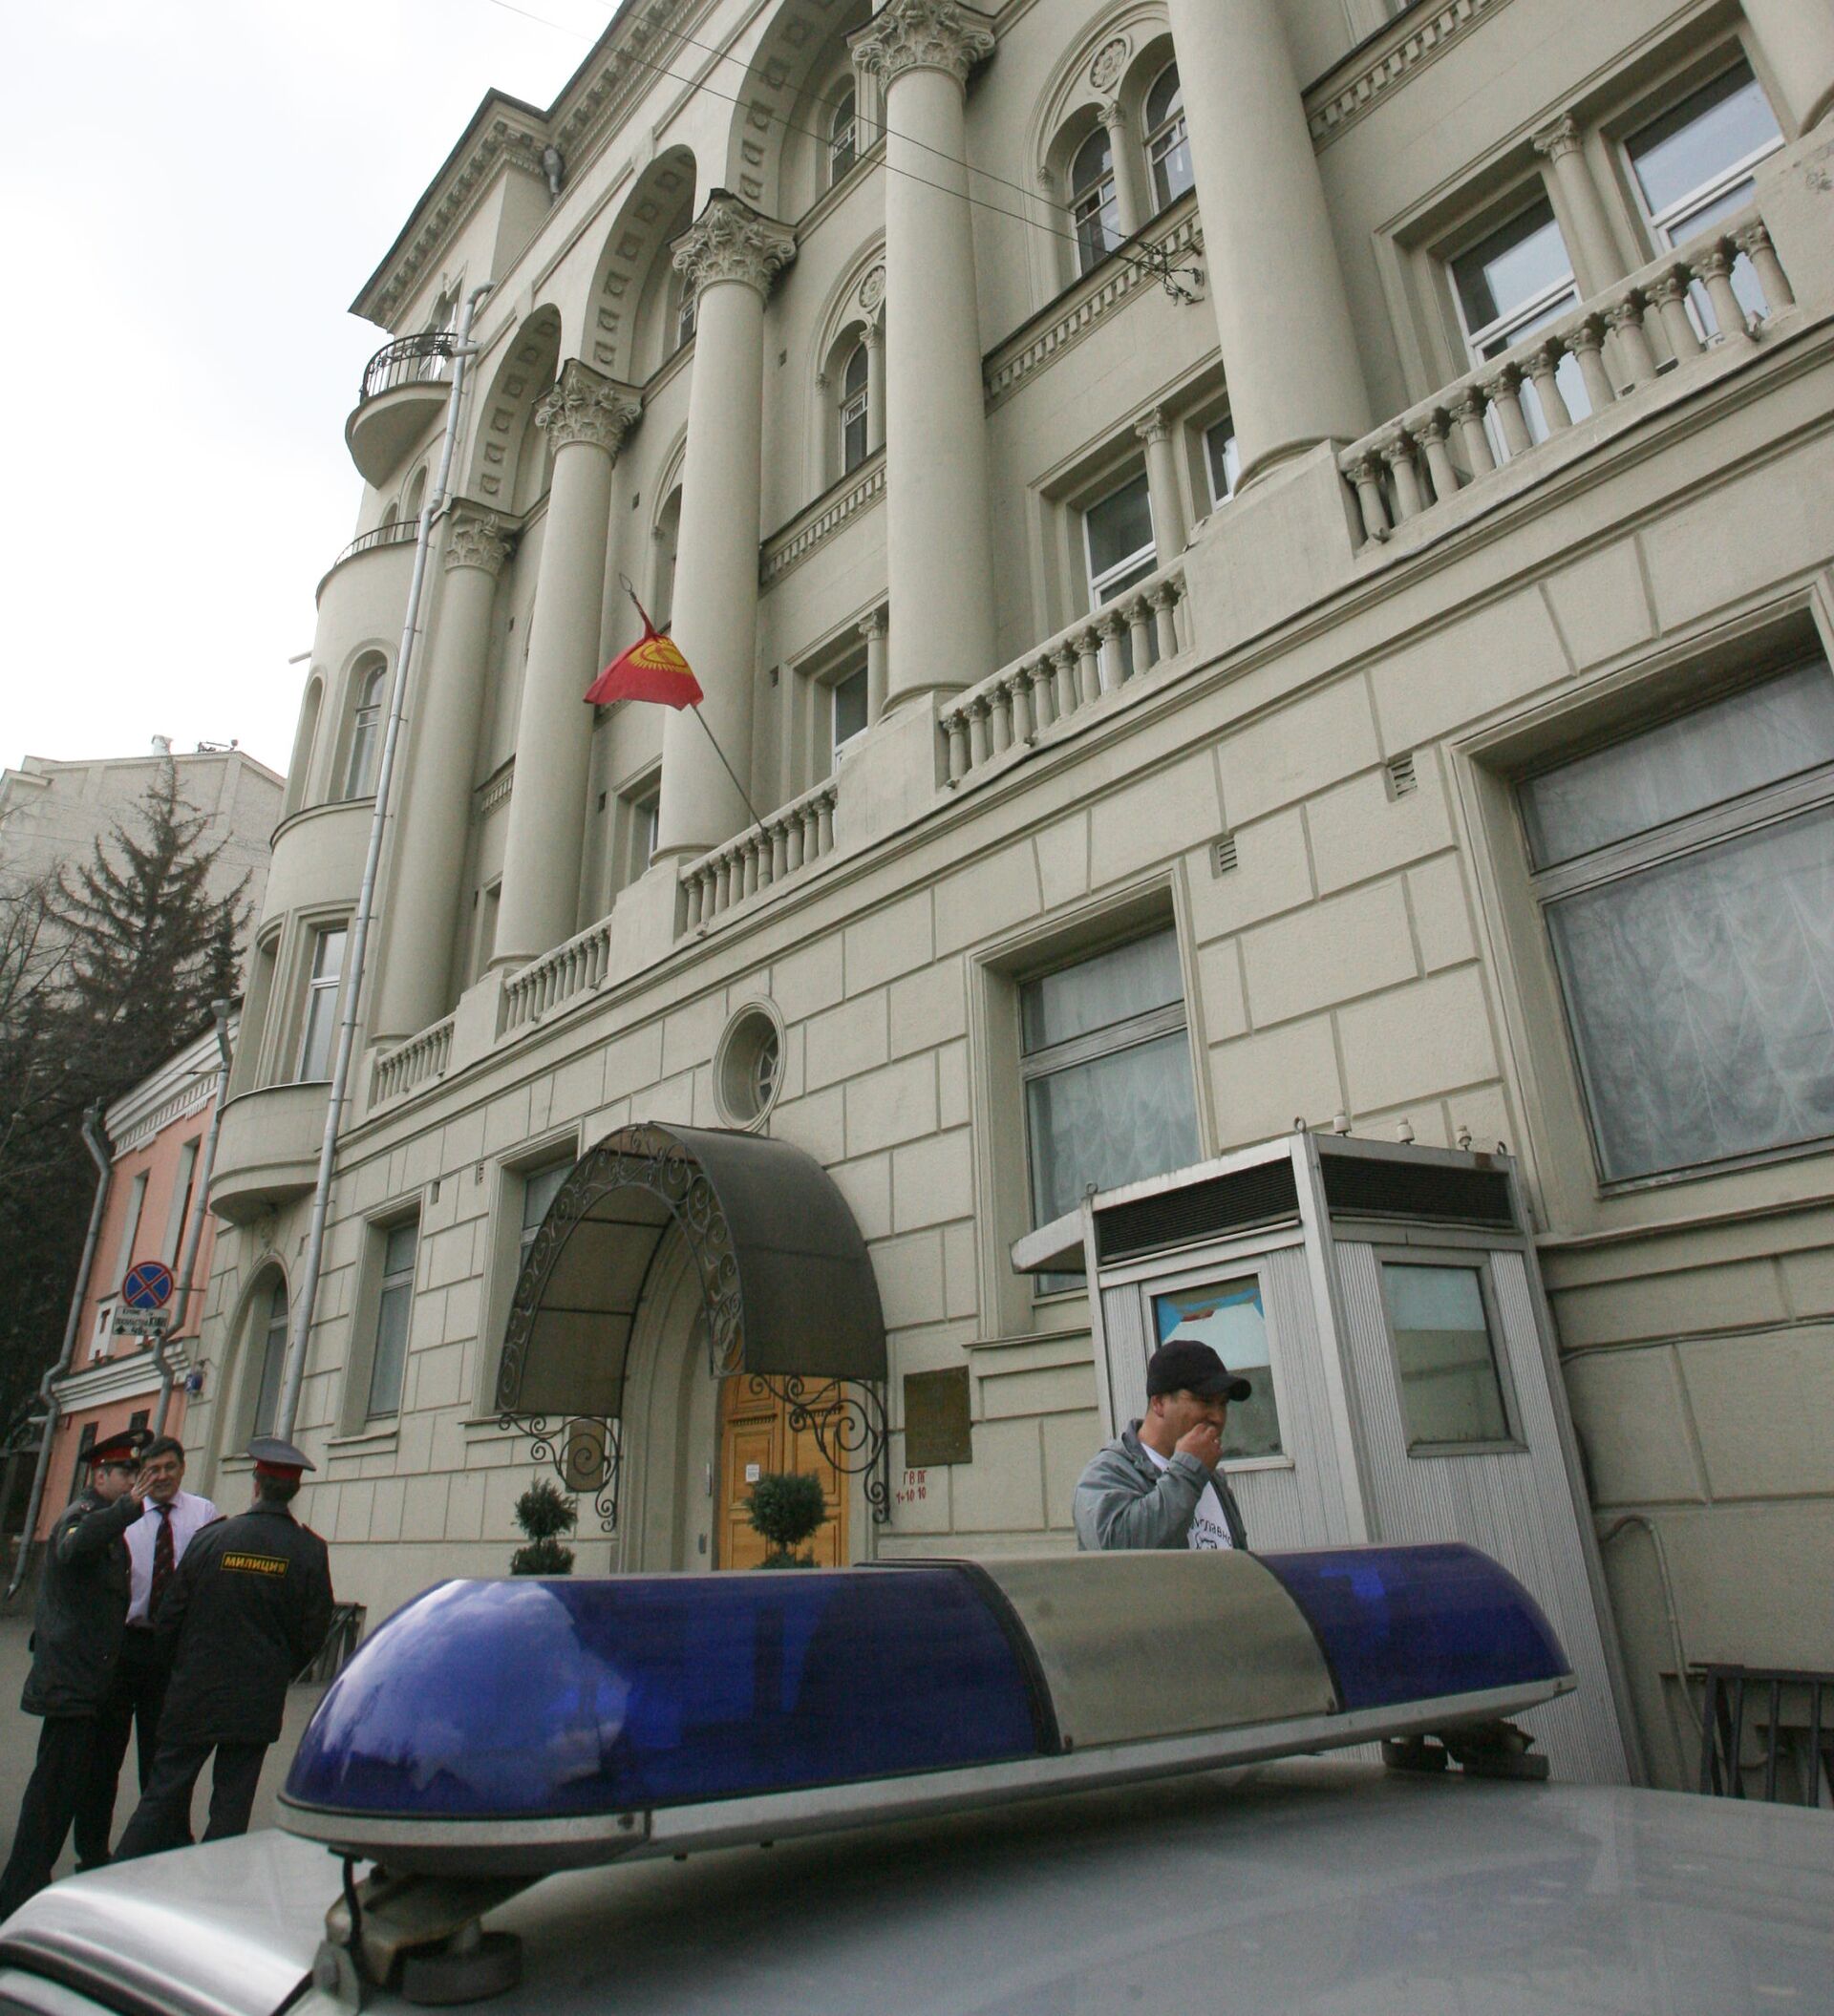 Киргизское посольство в москве